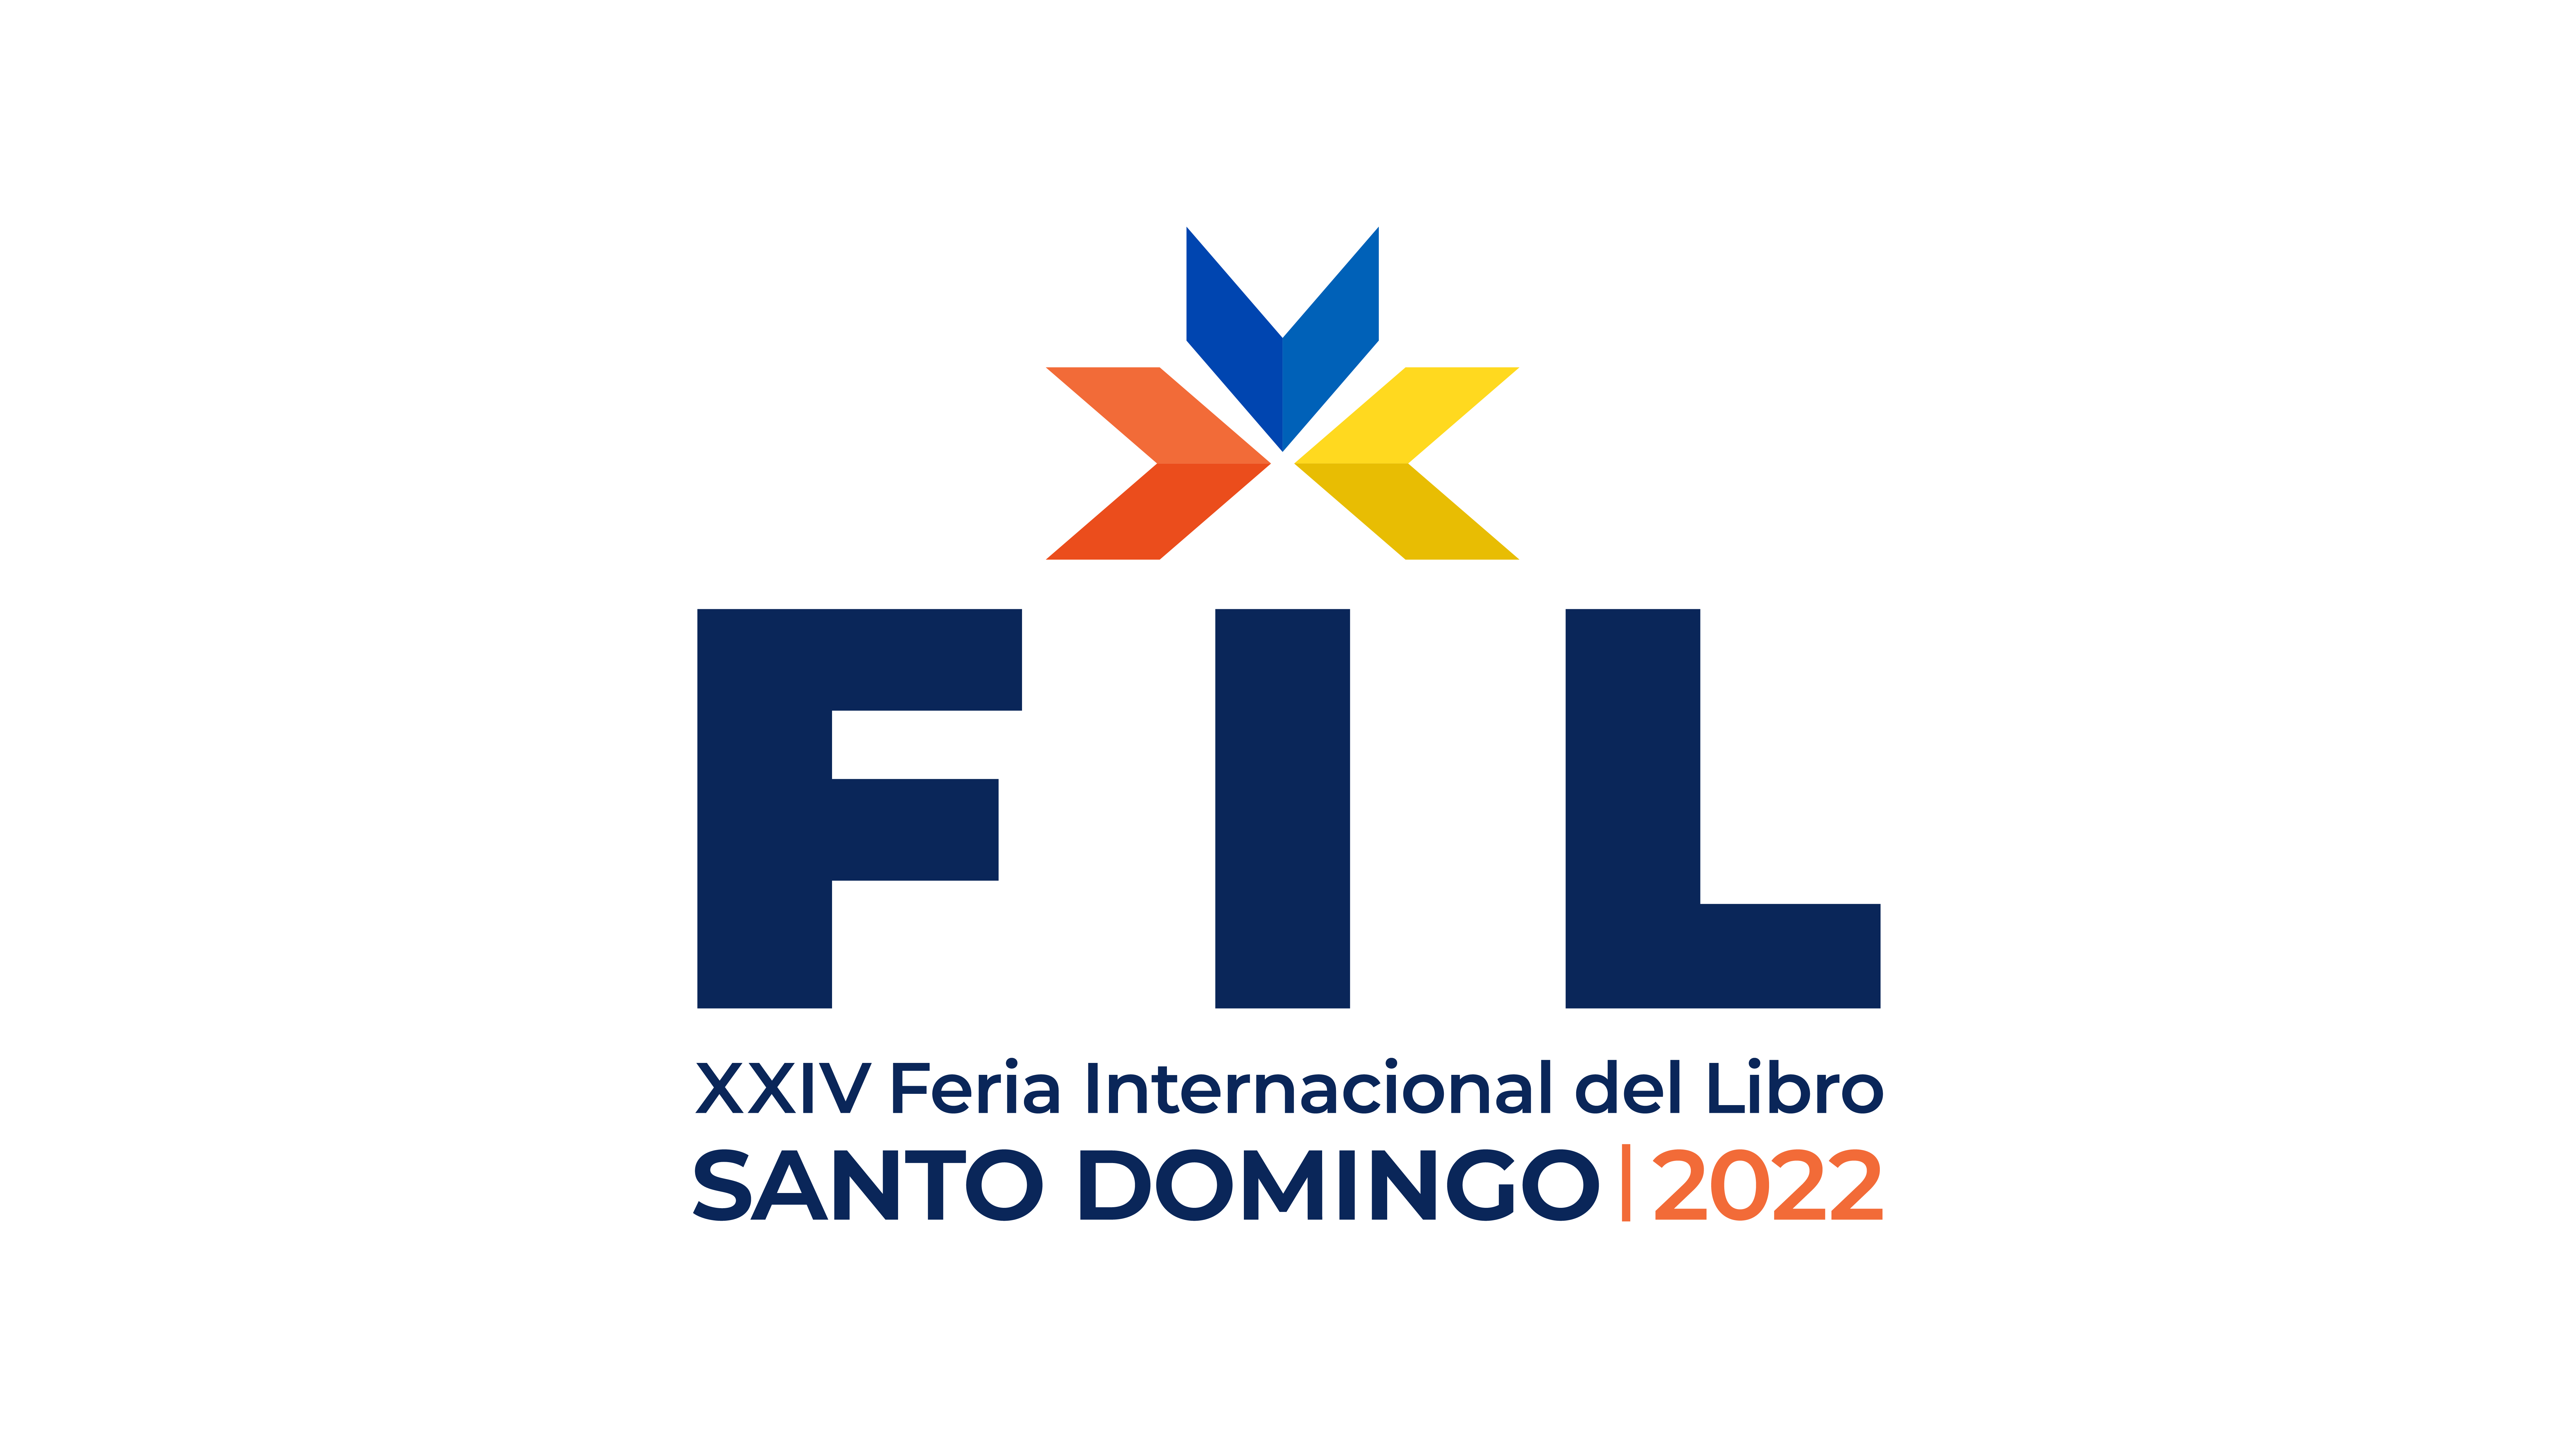 La FIL Santo Domingo estrena logo institucional